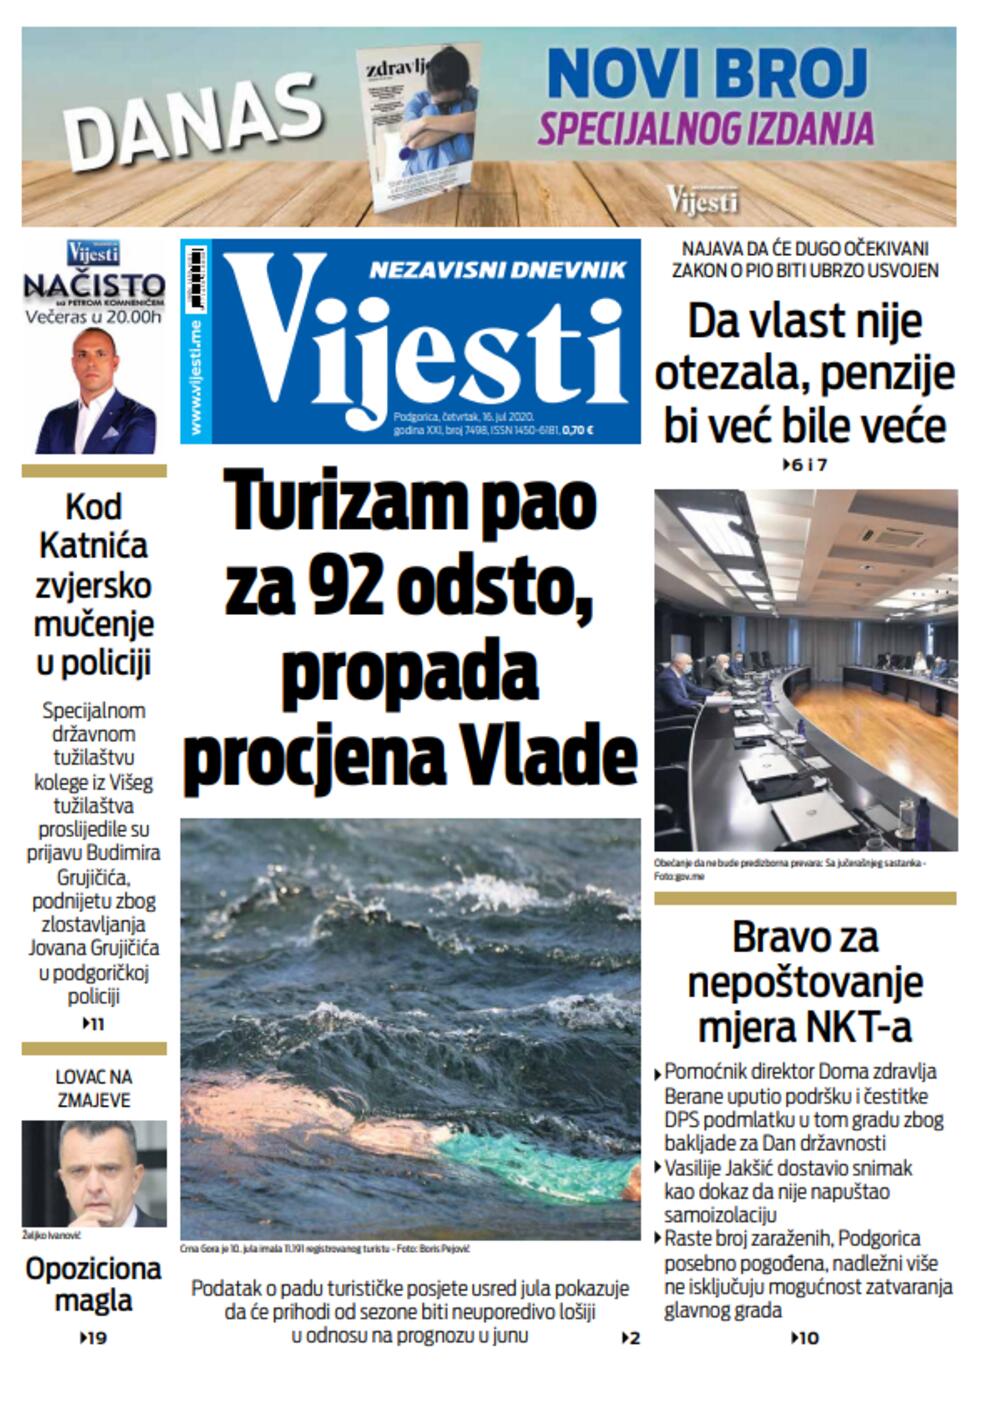 Naslovna strana "Vijesti" za 16.7.2020., Foto: Viejsti